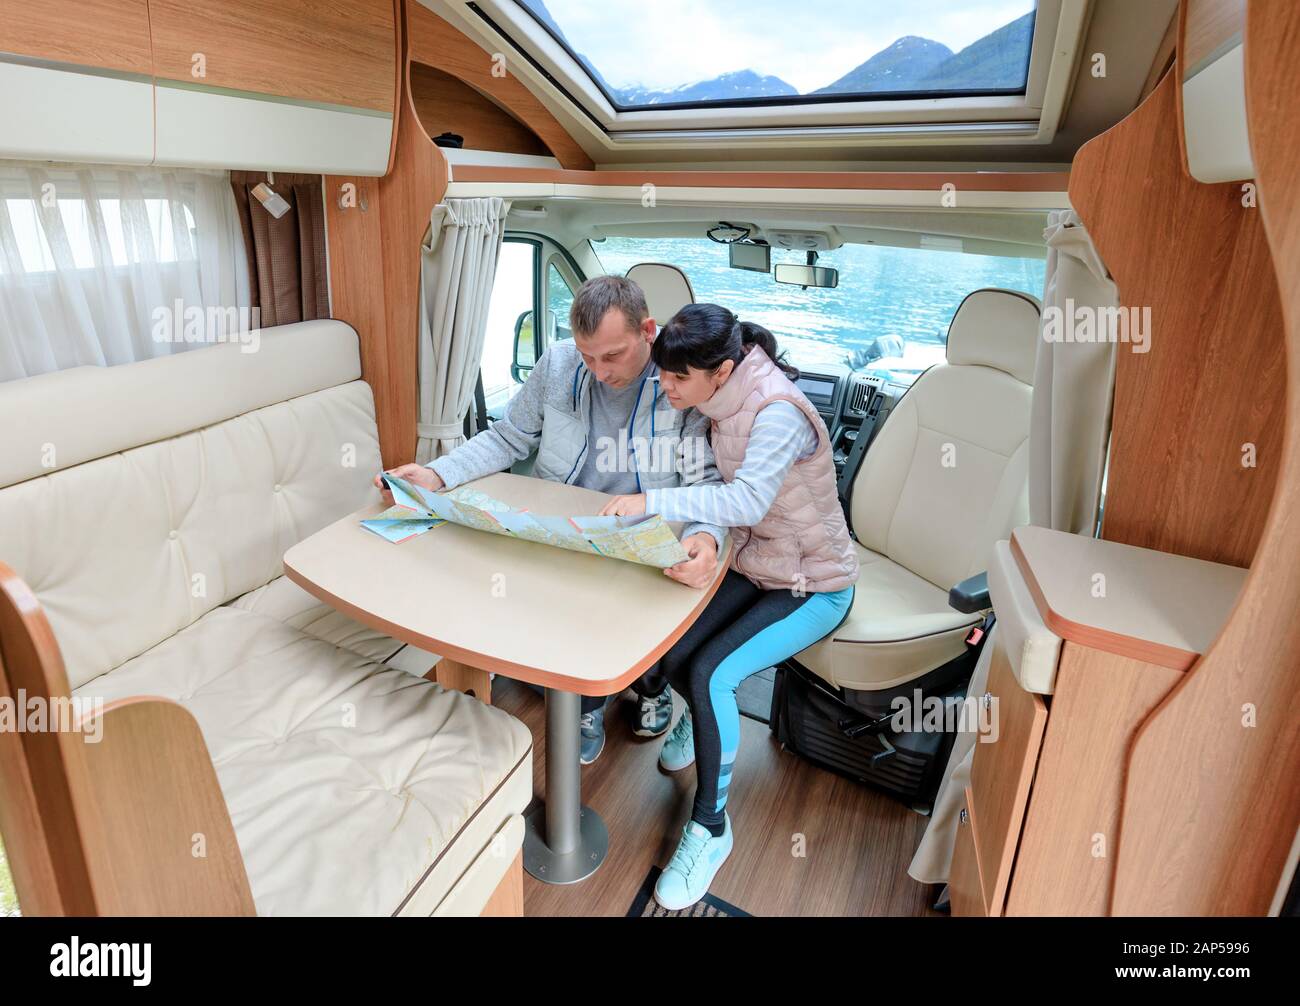 Las parejas en RV Camper mirando el mapa local para el viaje. Viajes de vacaciones familiares, viaje de vacaciones en autocaravana, caravana alquiler de vacaciones. Foto de stock